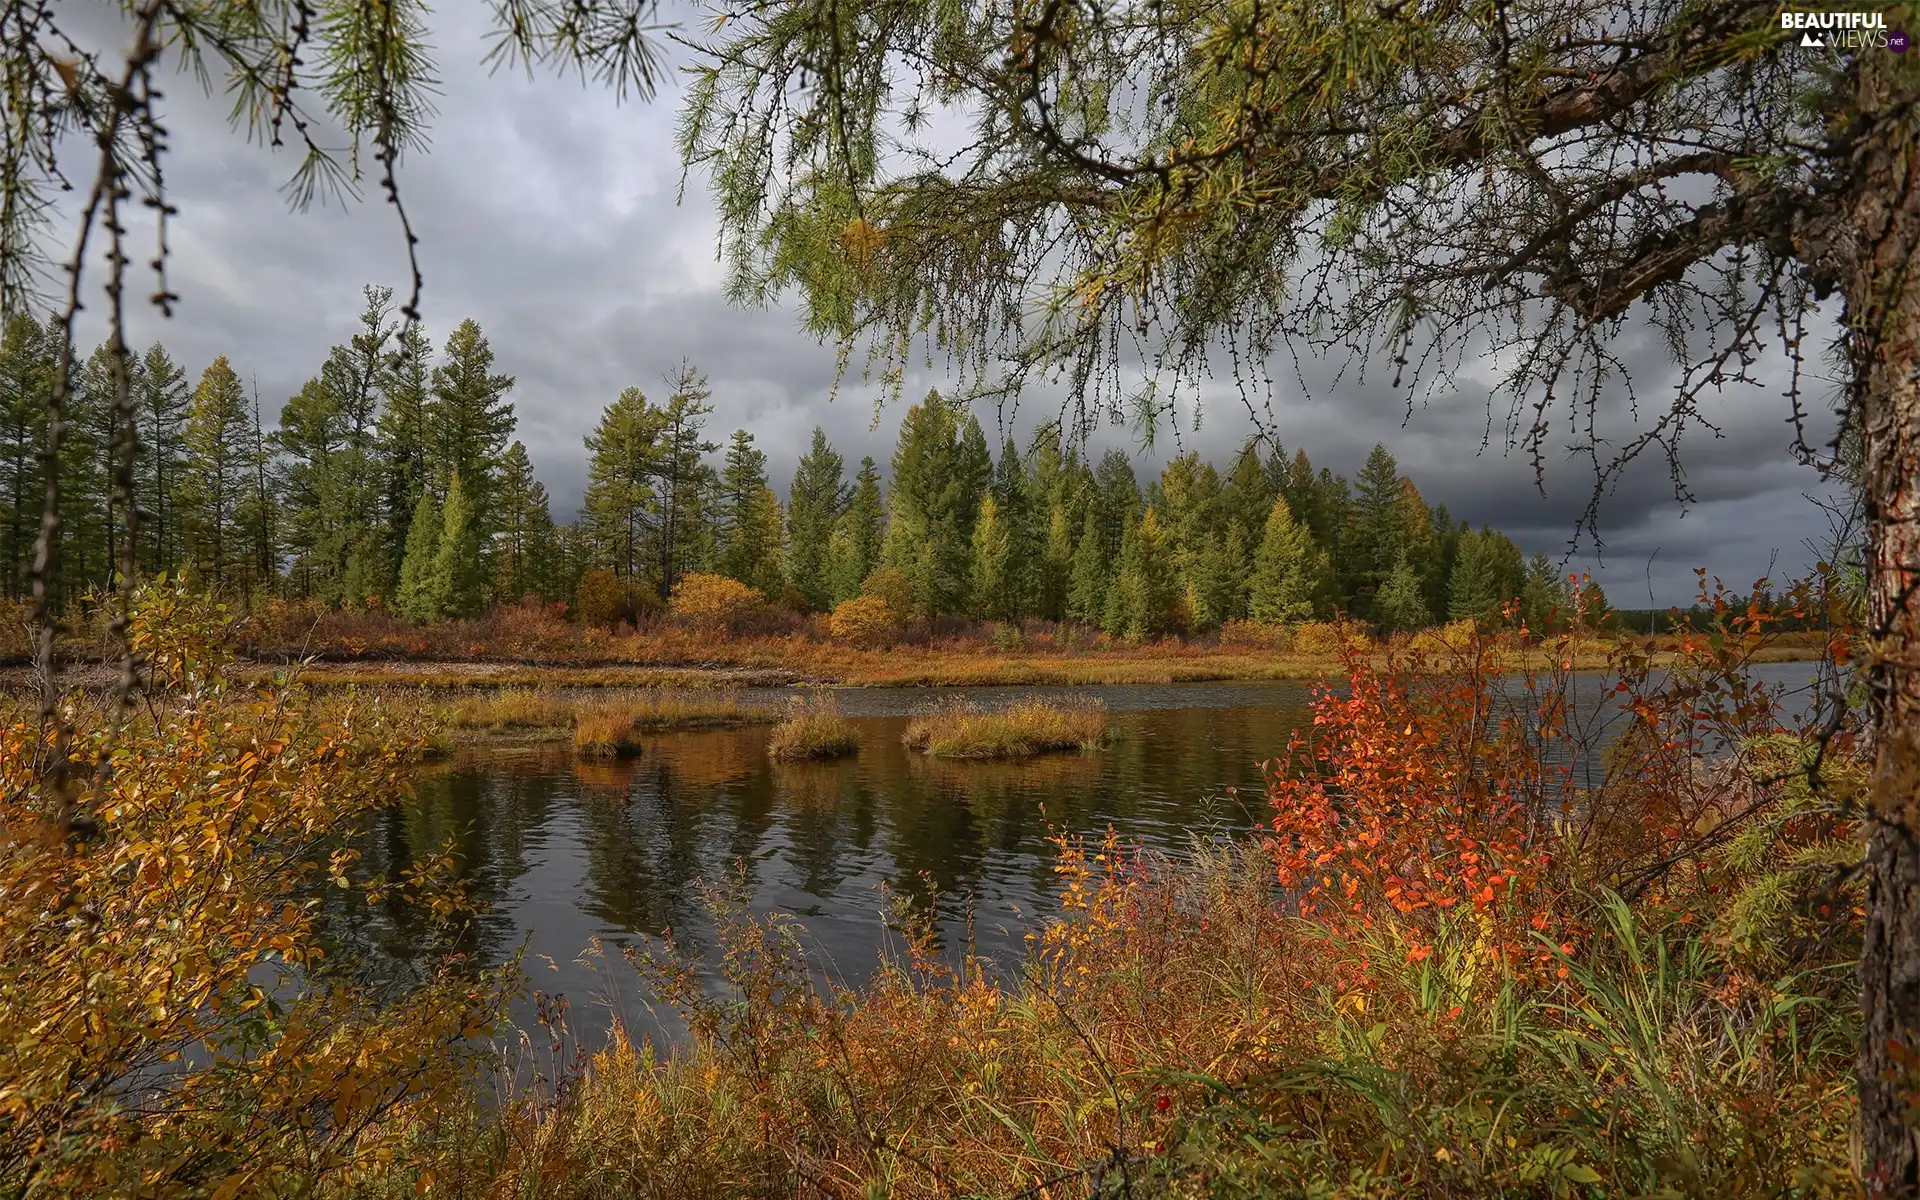 trees, viewes, clouds, Bush, VEGETATION, River, autumn, Coloured